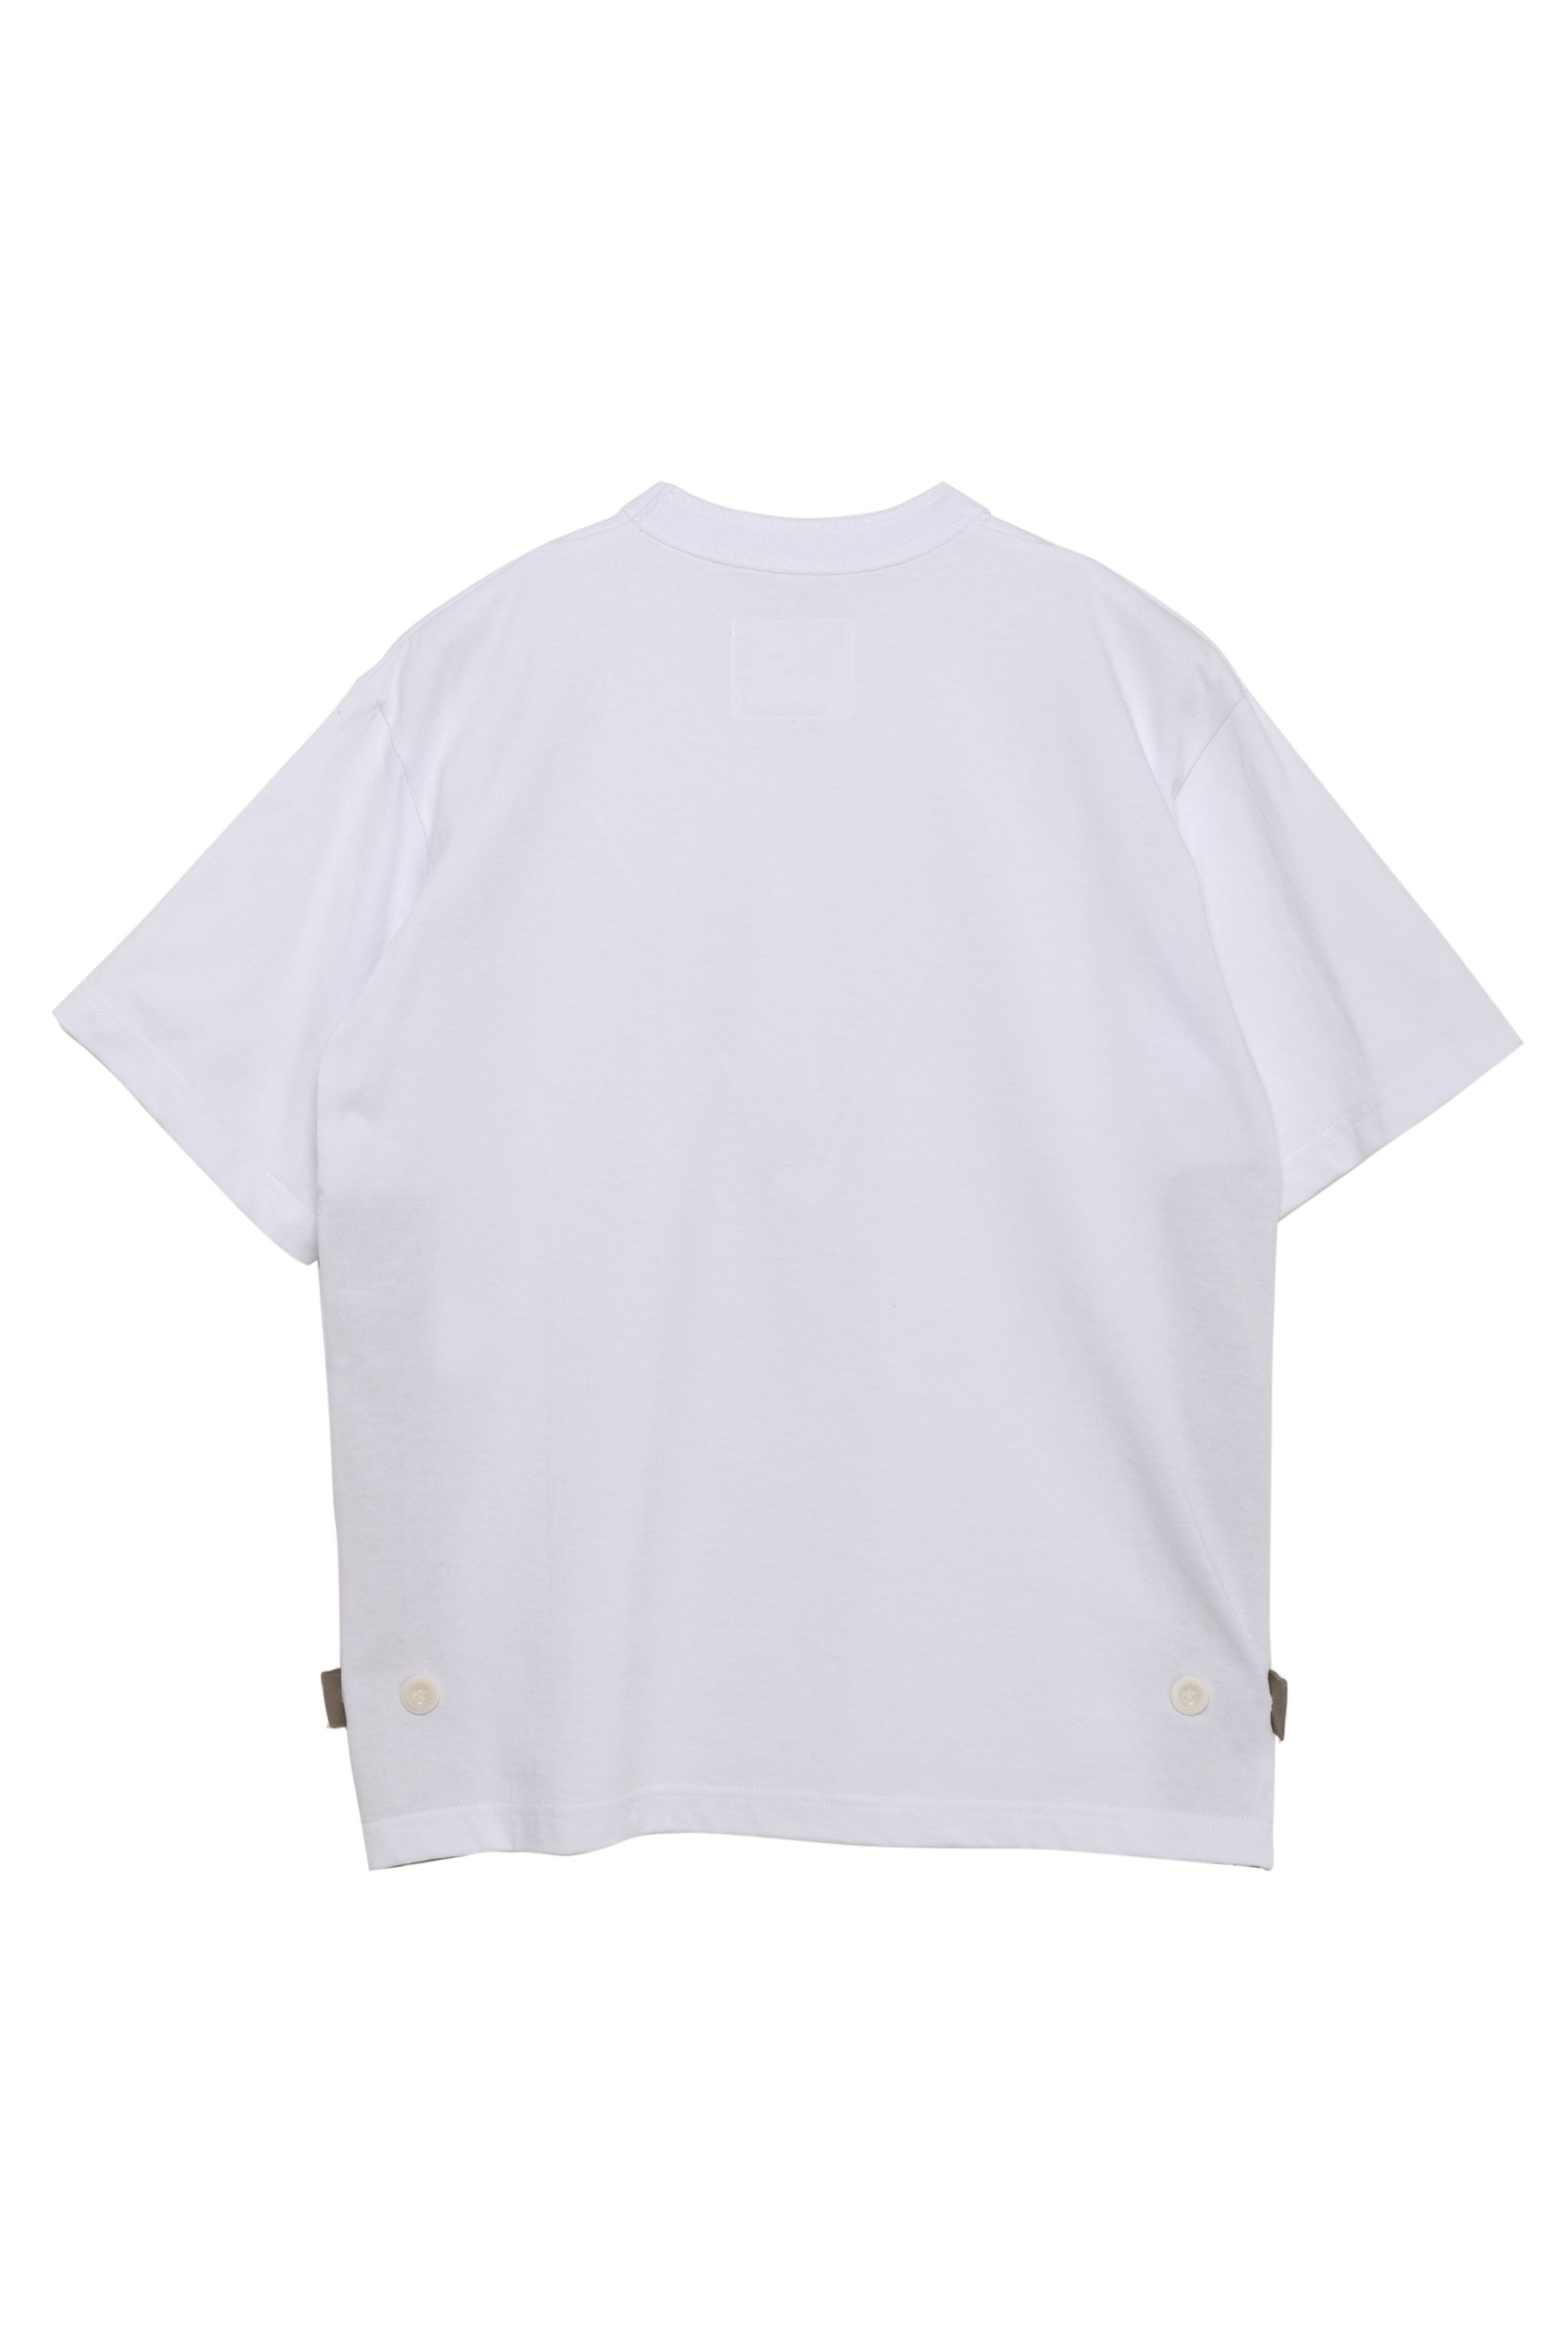 Cotton Jersey T-Shirt - 2